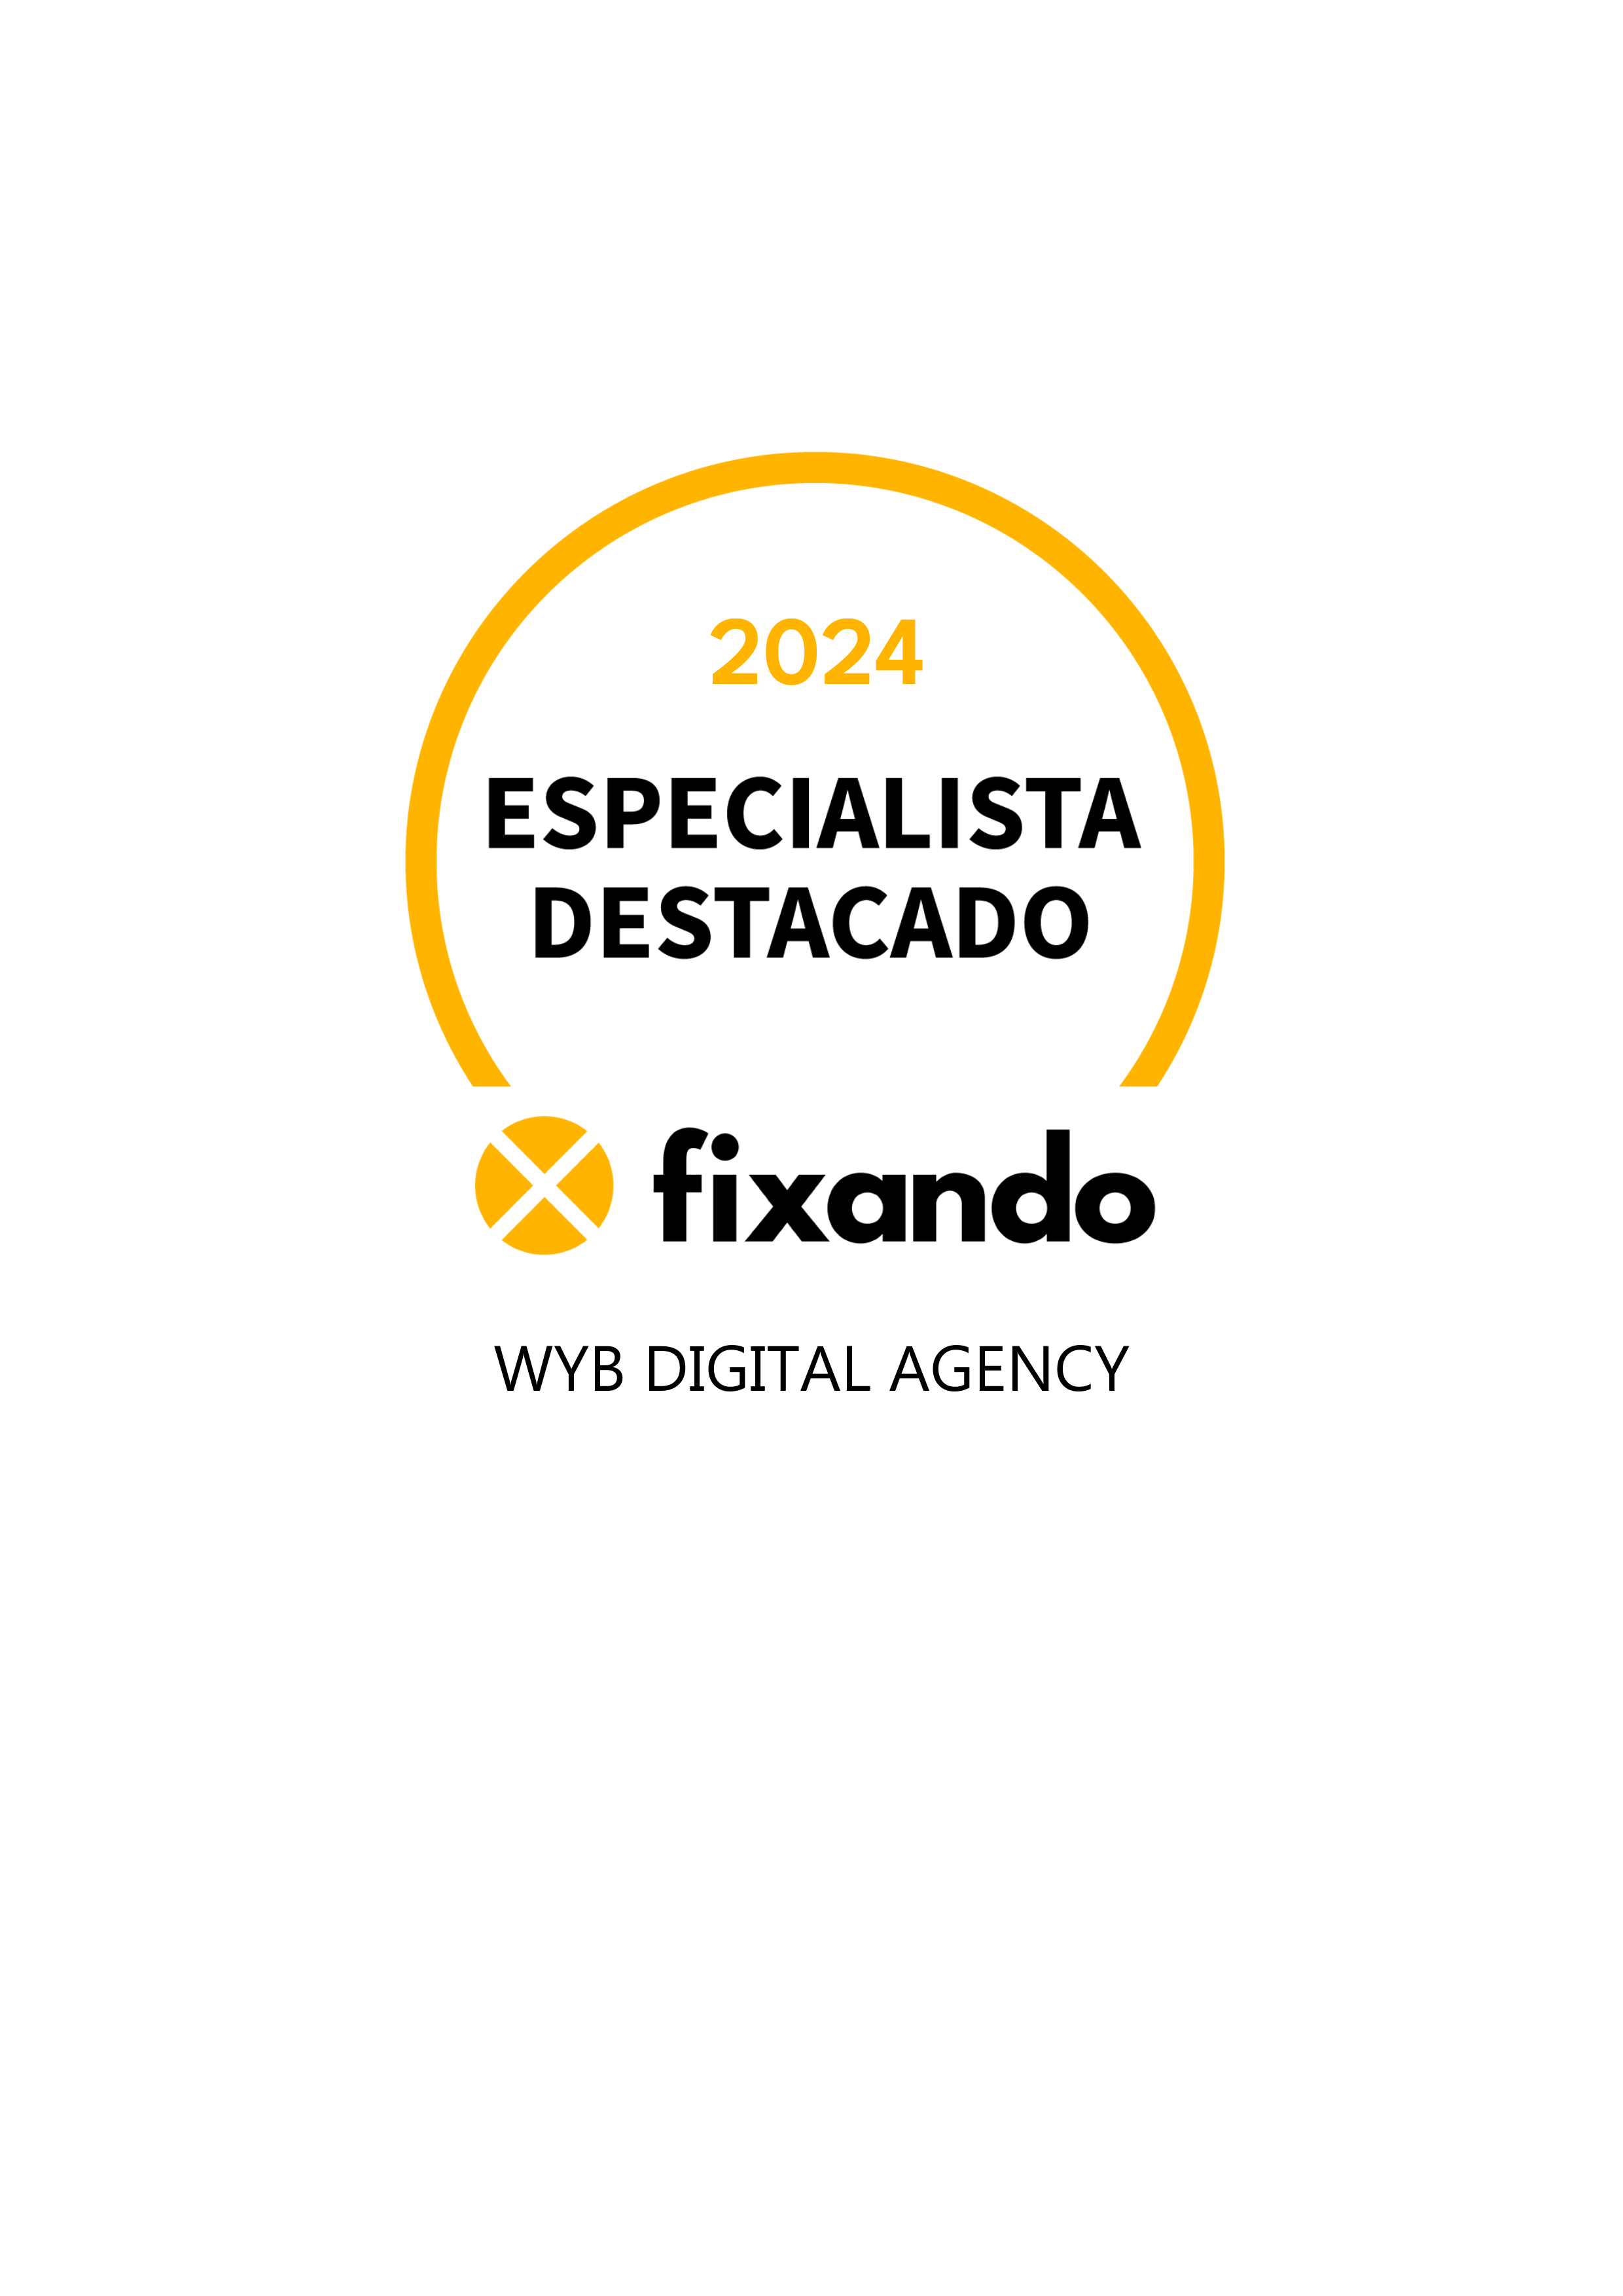 WYB Digital Agency - Lisboa - Direct Mail Marketing